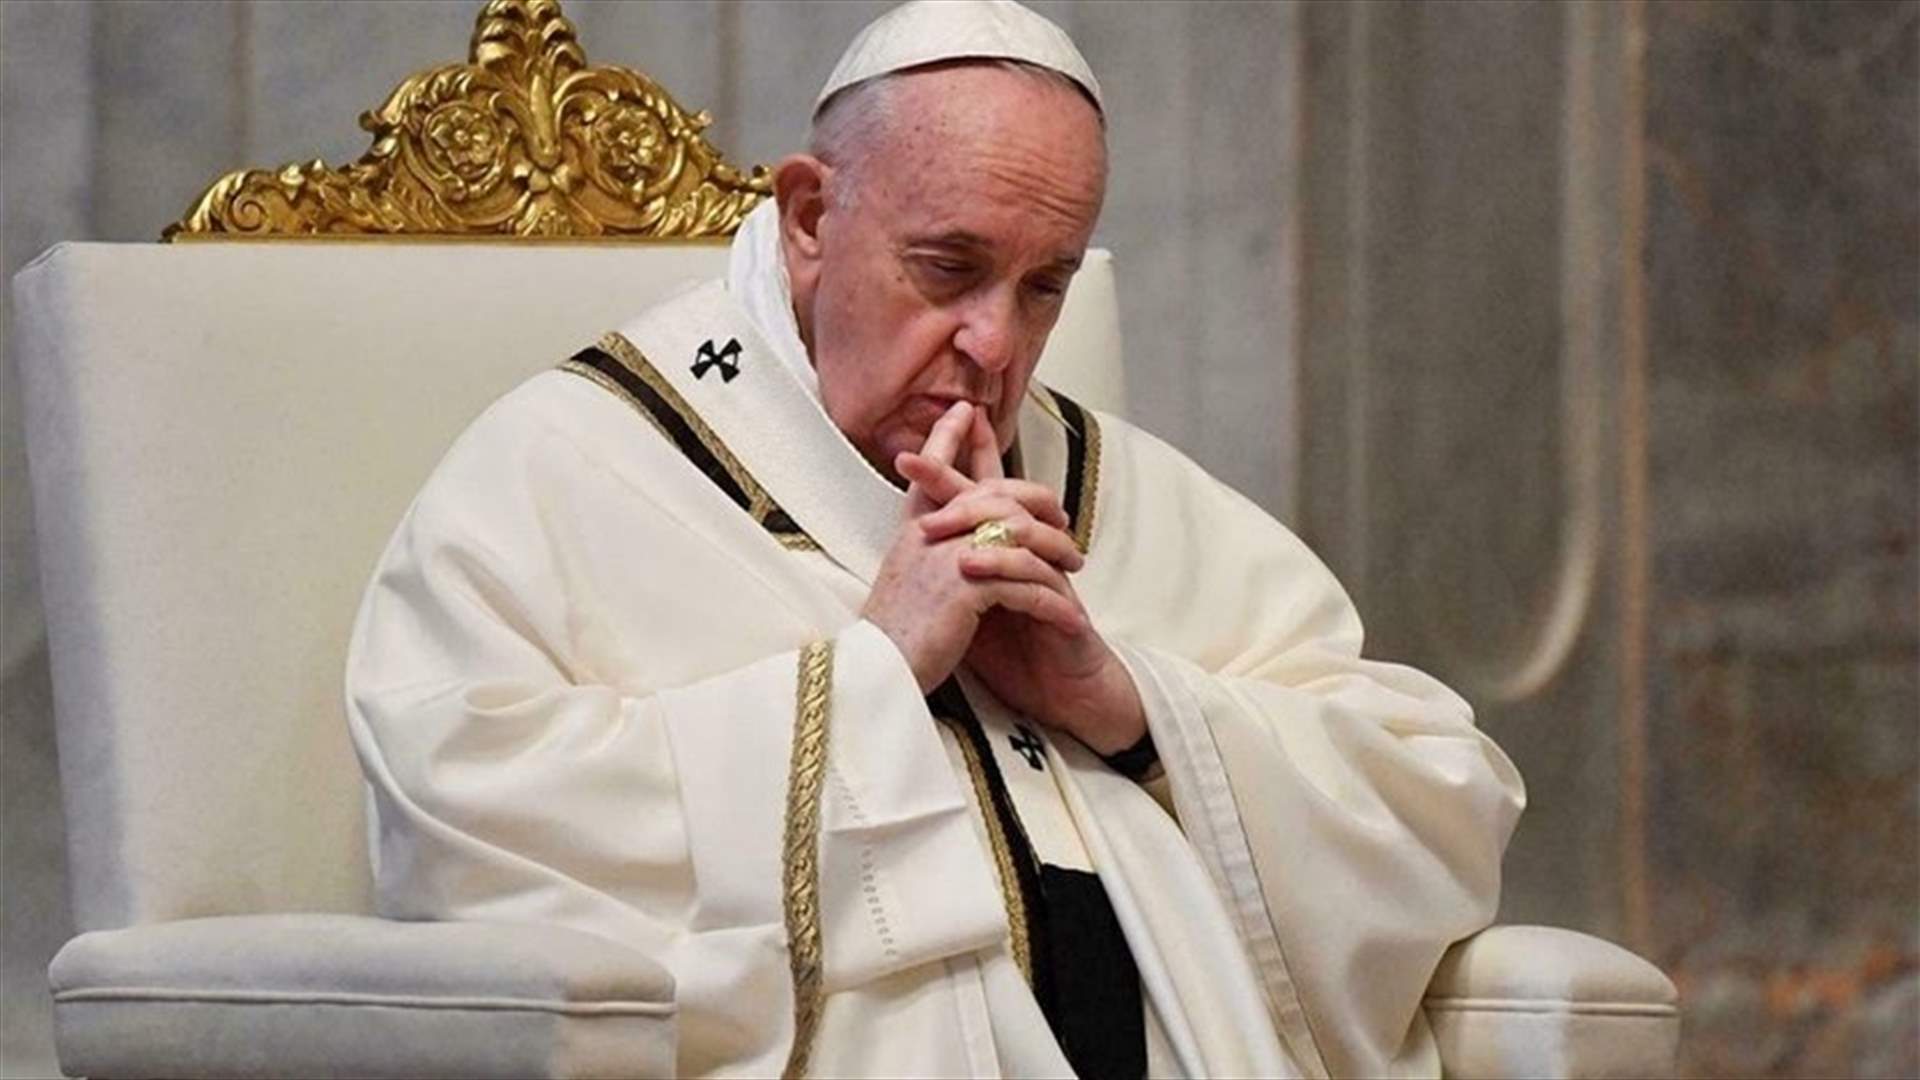 البابا فرنسيس لعون: تدركون مدى تعلقي الخاص بلبنان